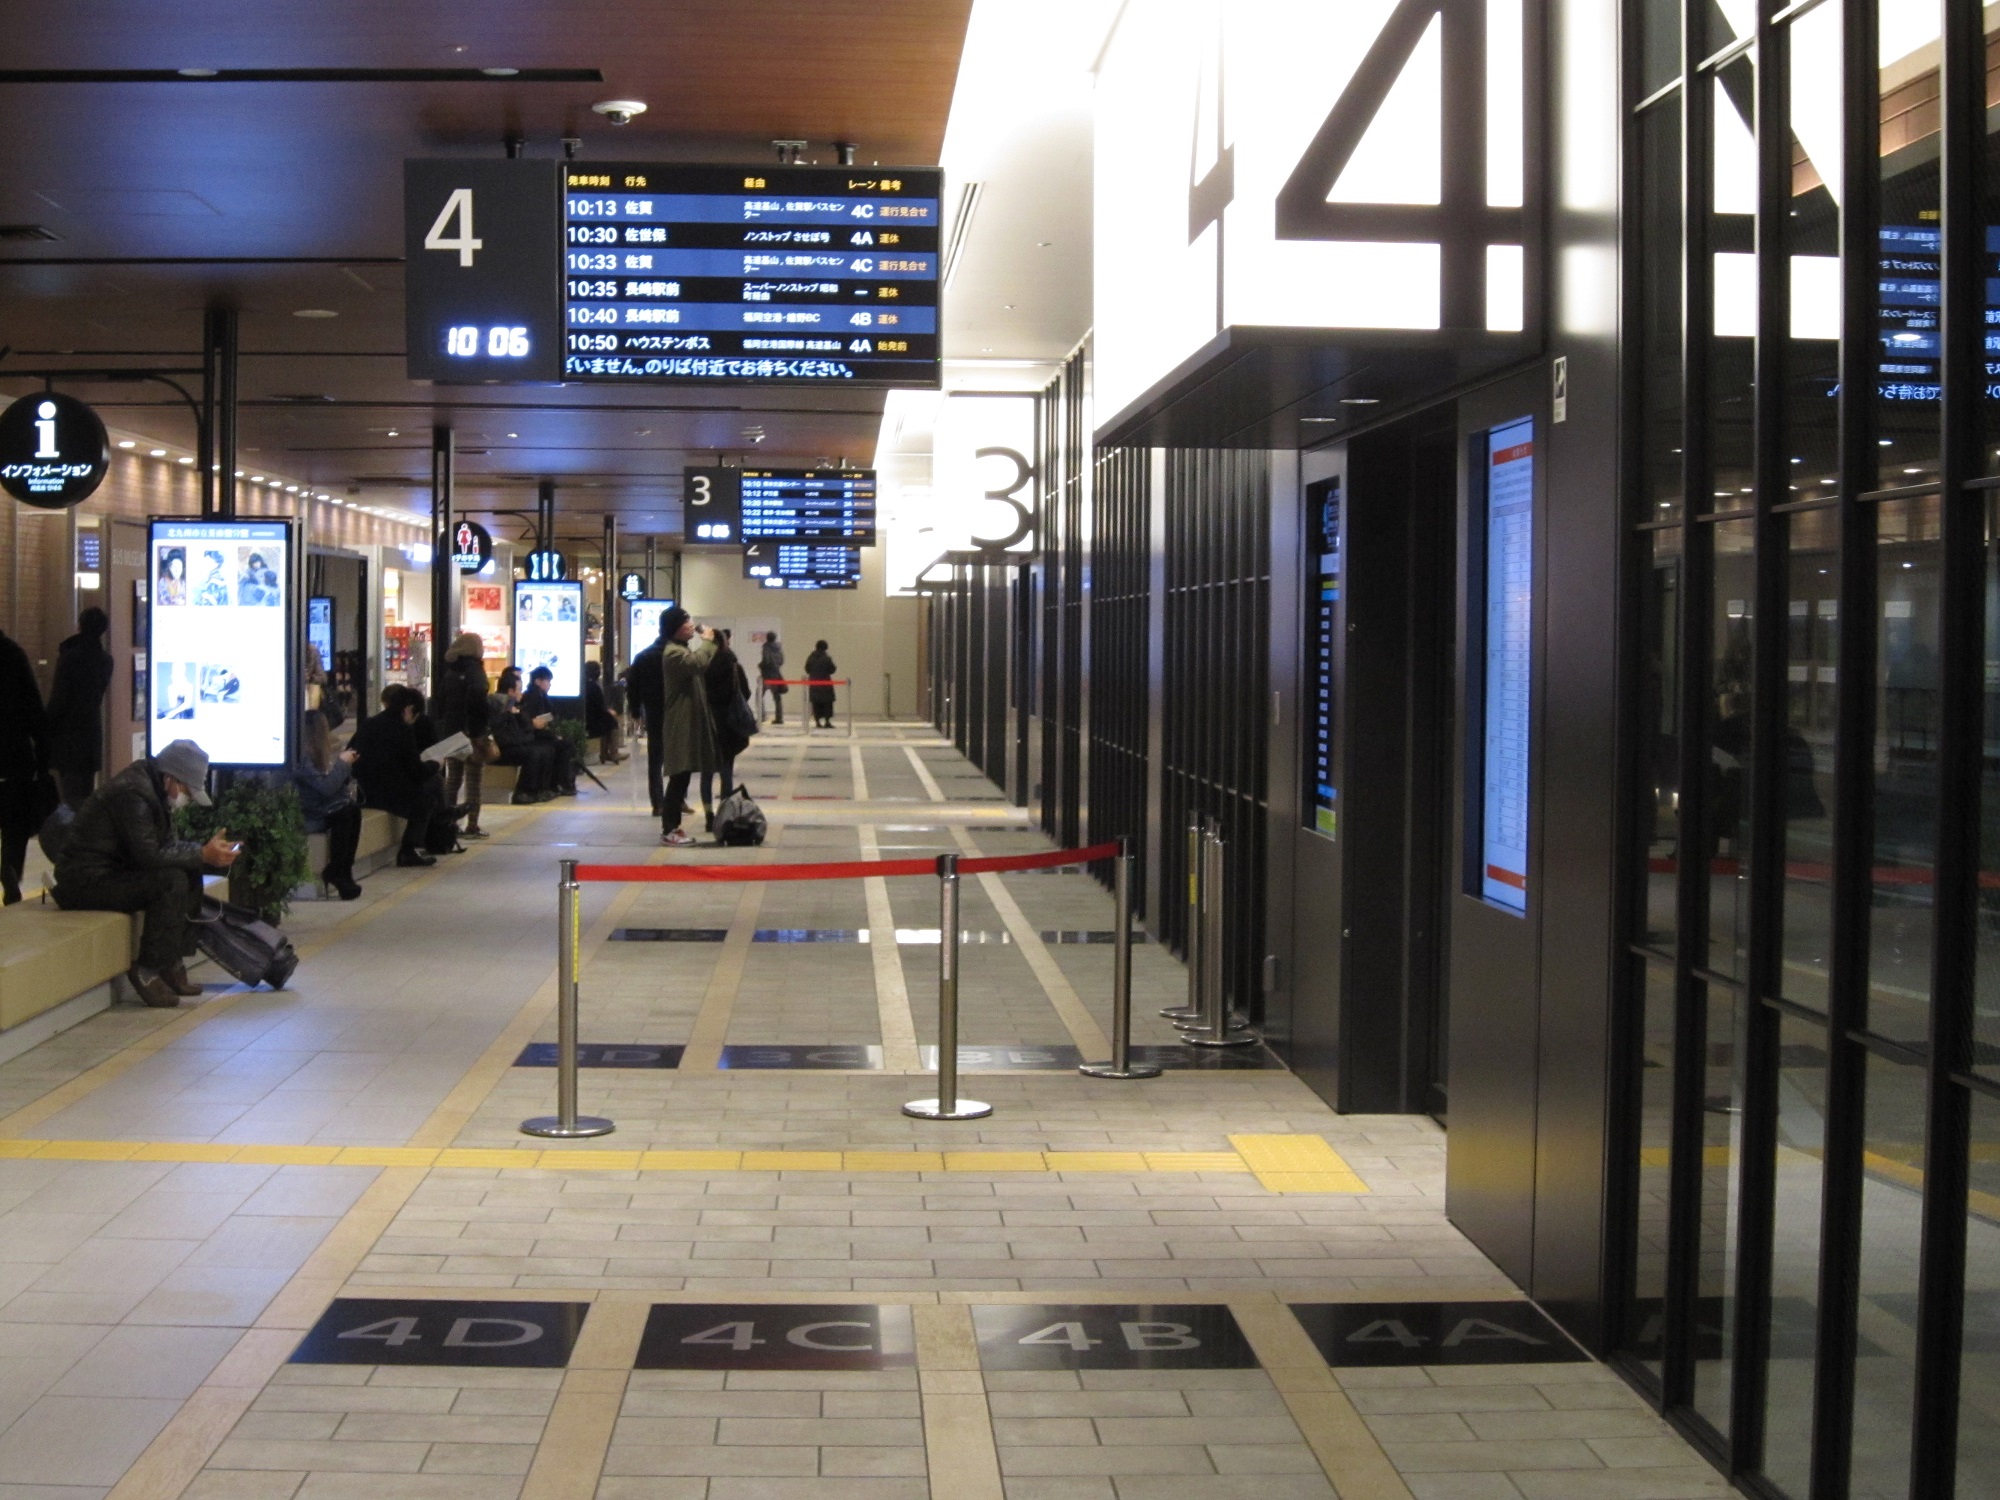 福岡 天神バスターミナル 3番のりば 4番のりば